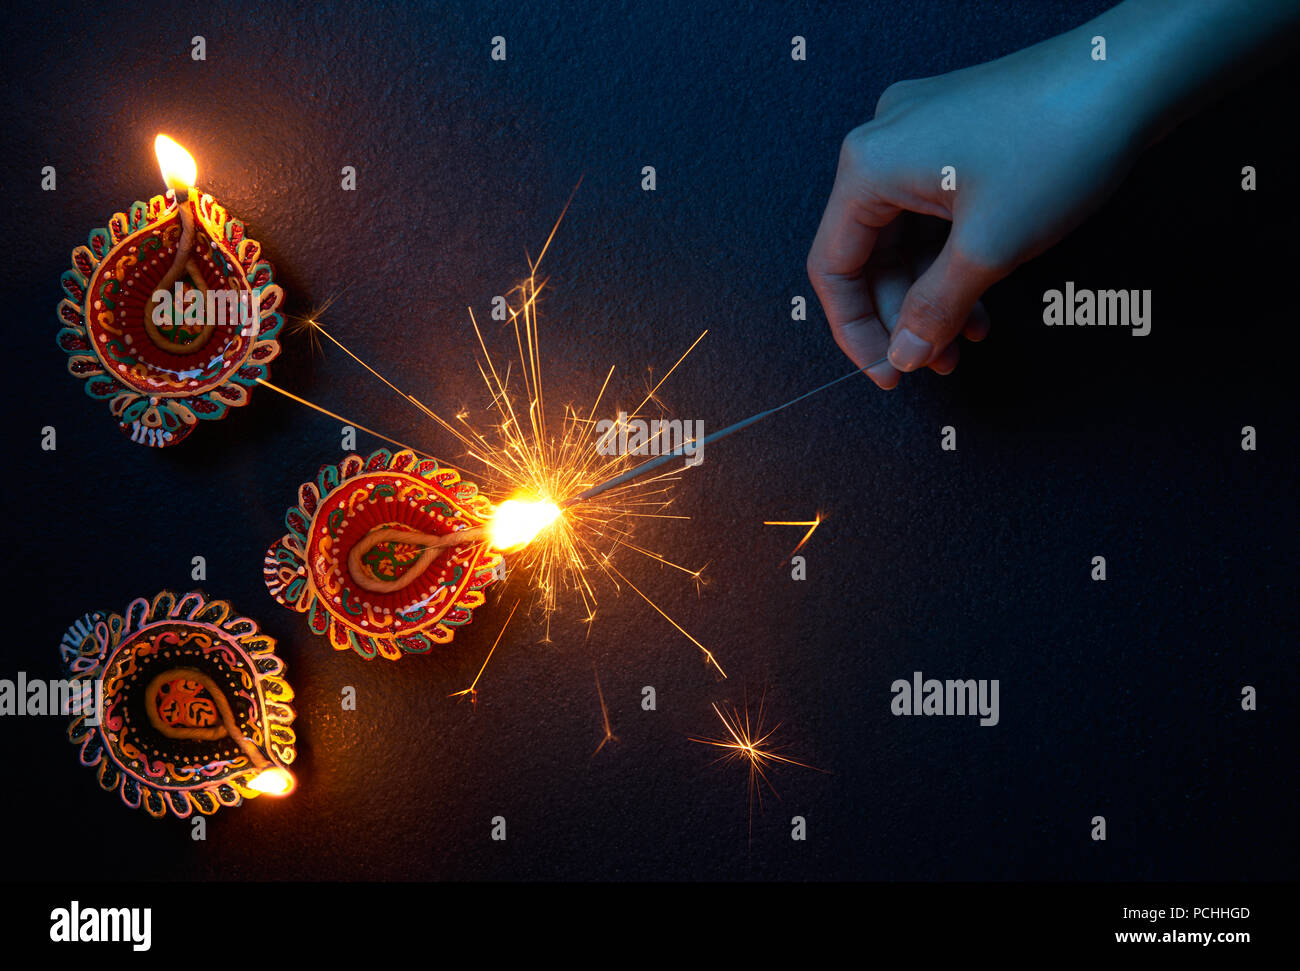 Beleuchtung eine Wunderkerze mit diya Lampe während Diwali Feier Stockfoto